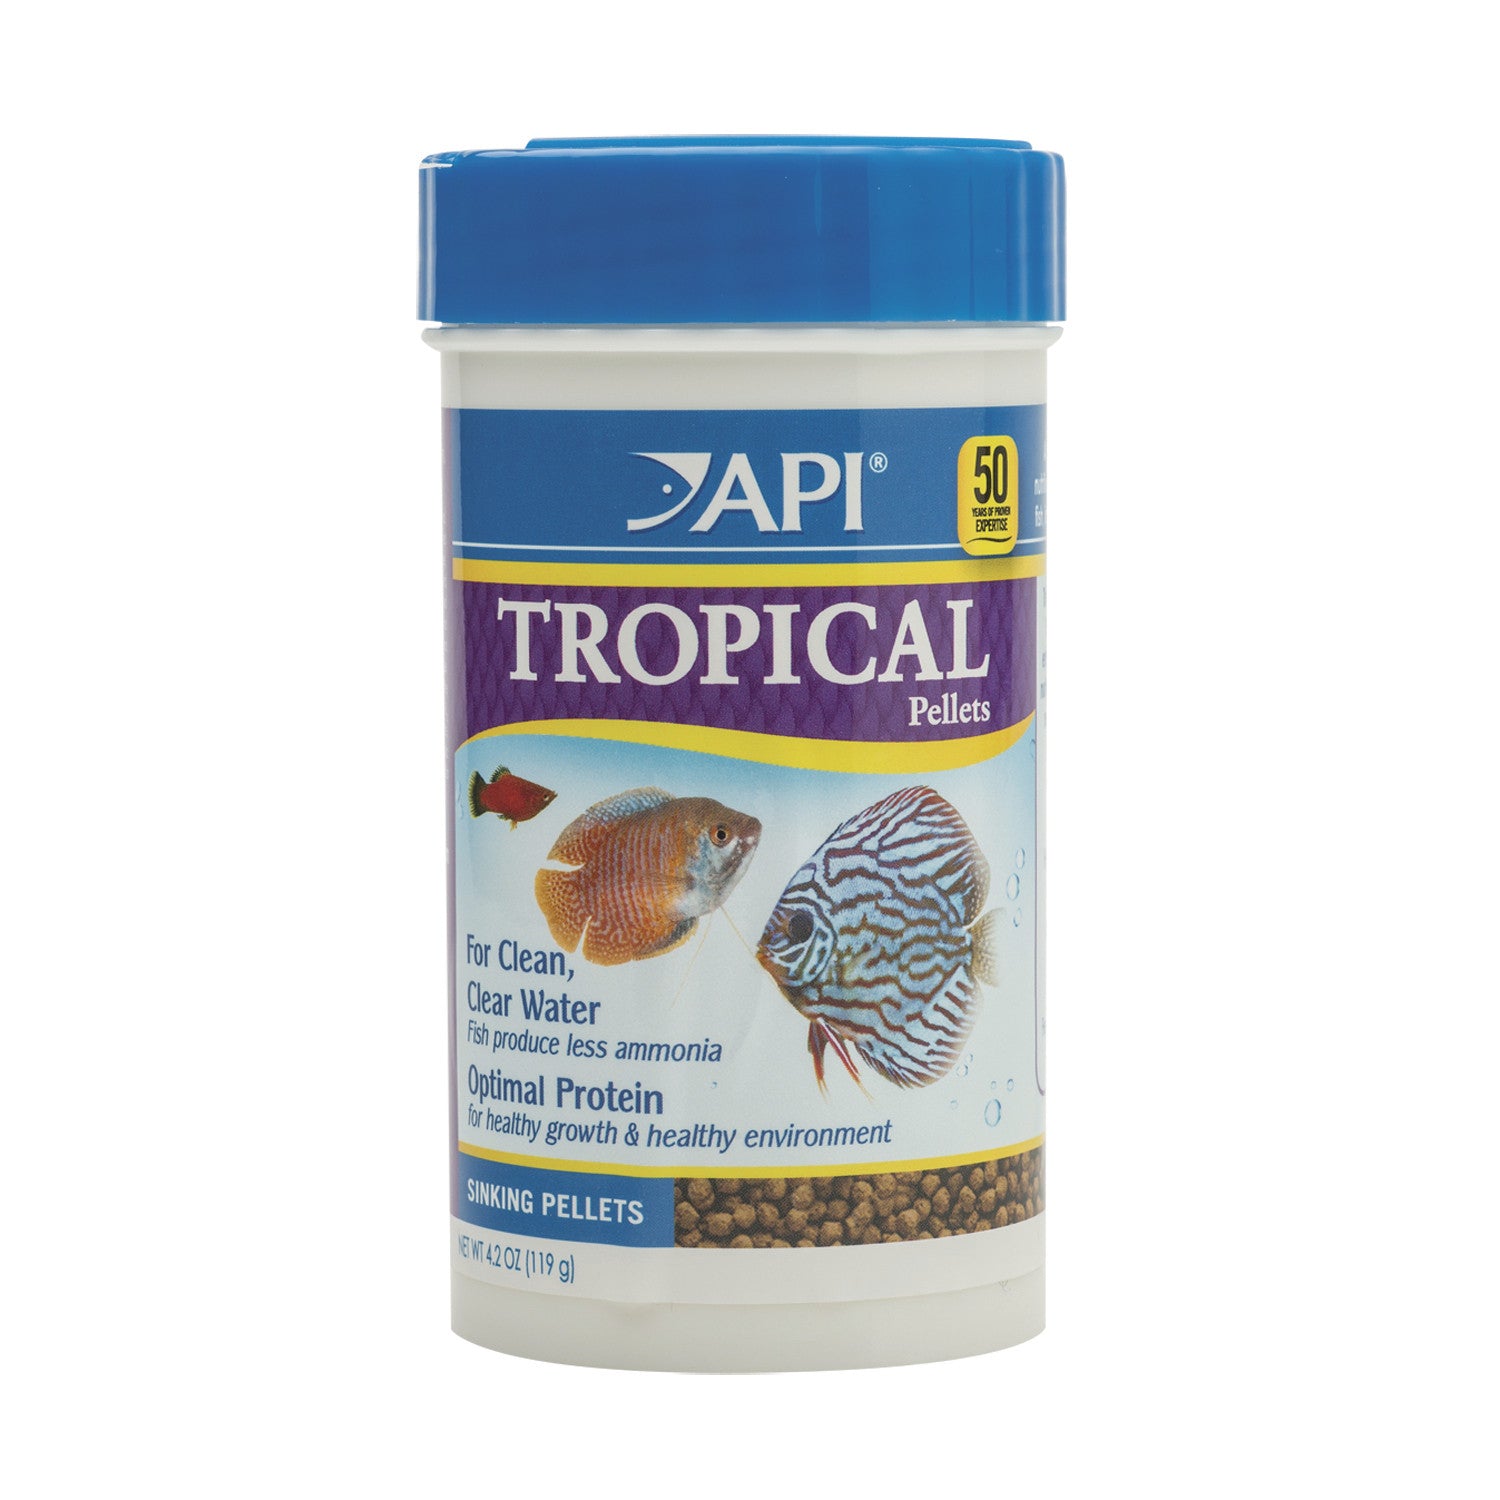 API Tropical Pellets